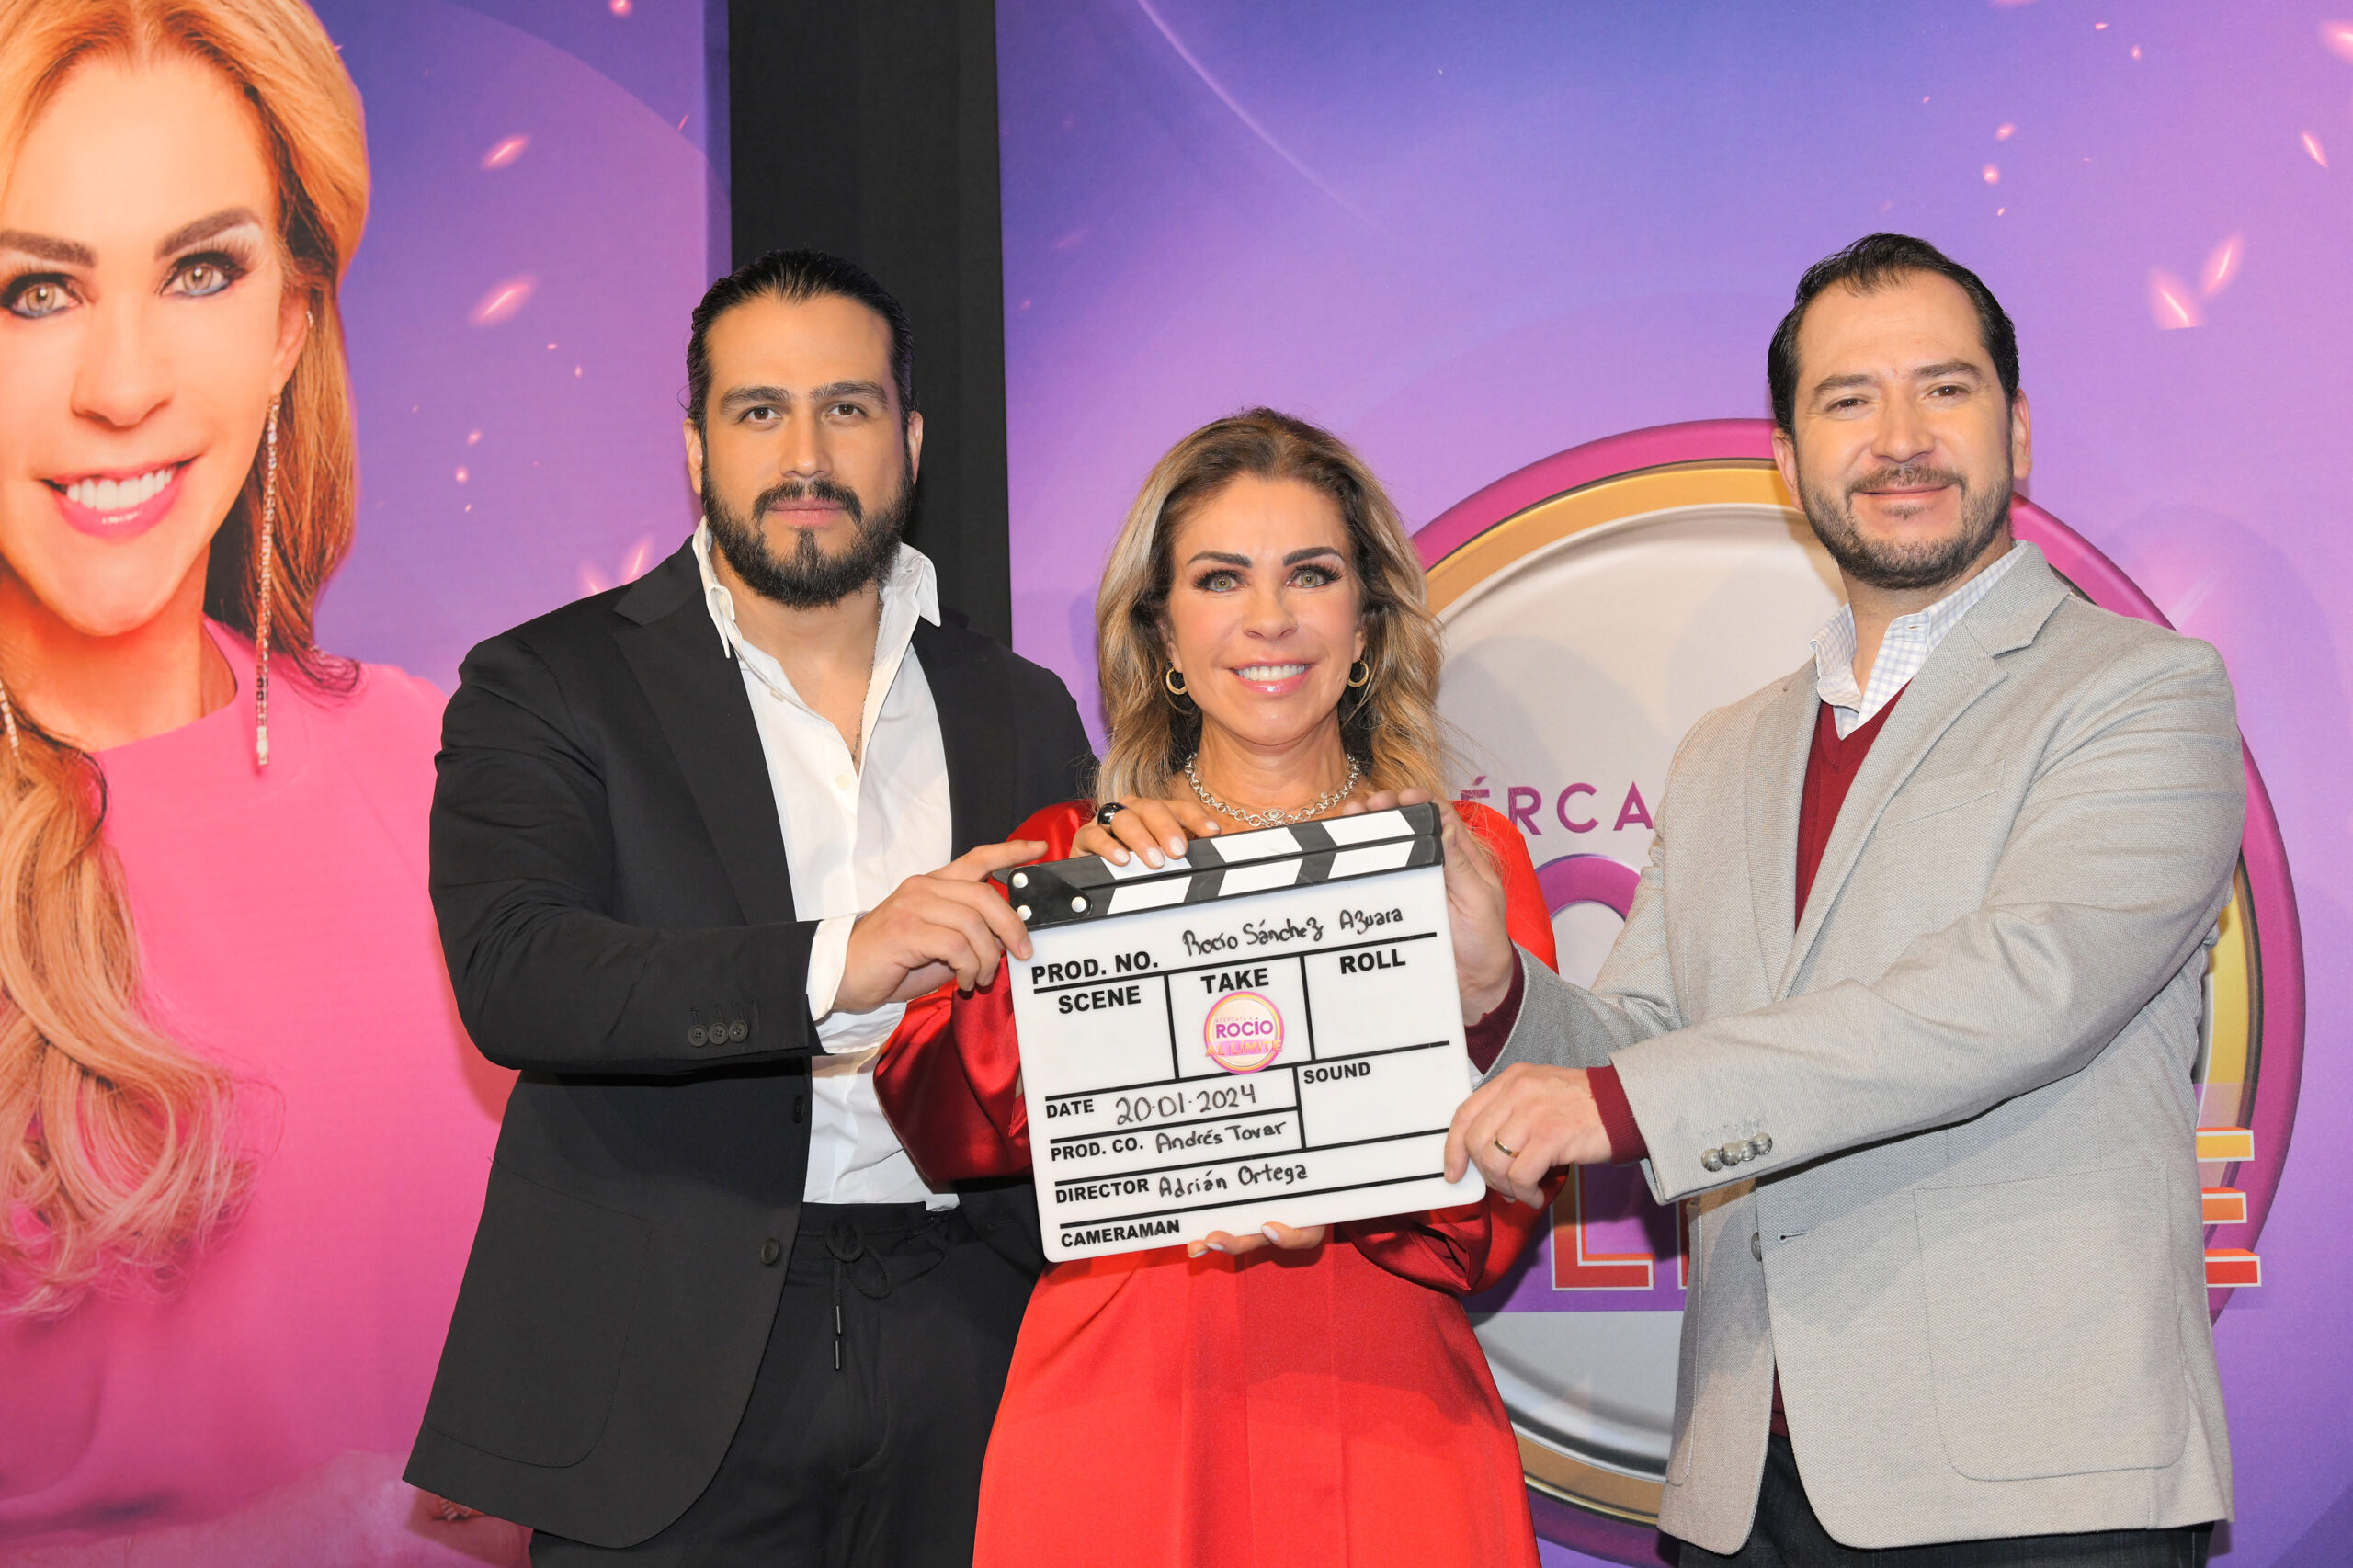 “Acércate a Rocío al Límite”: el nuevo talk show de TV Azteca, conducido por Rocío Sánchez Azuara